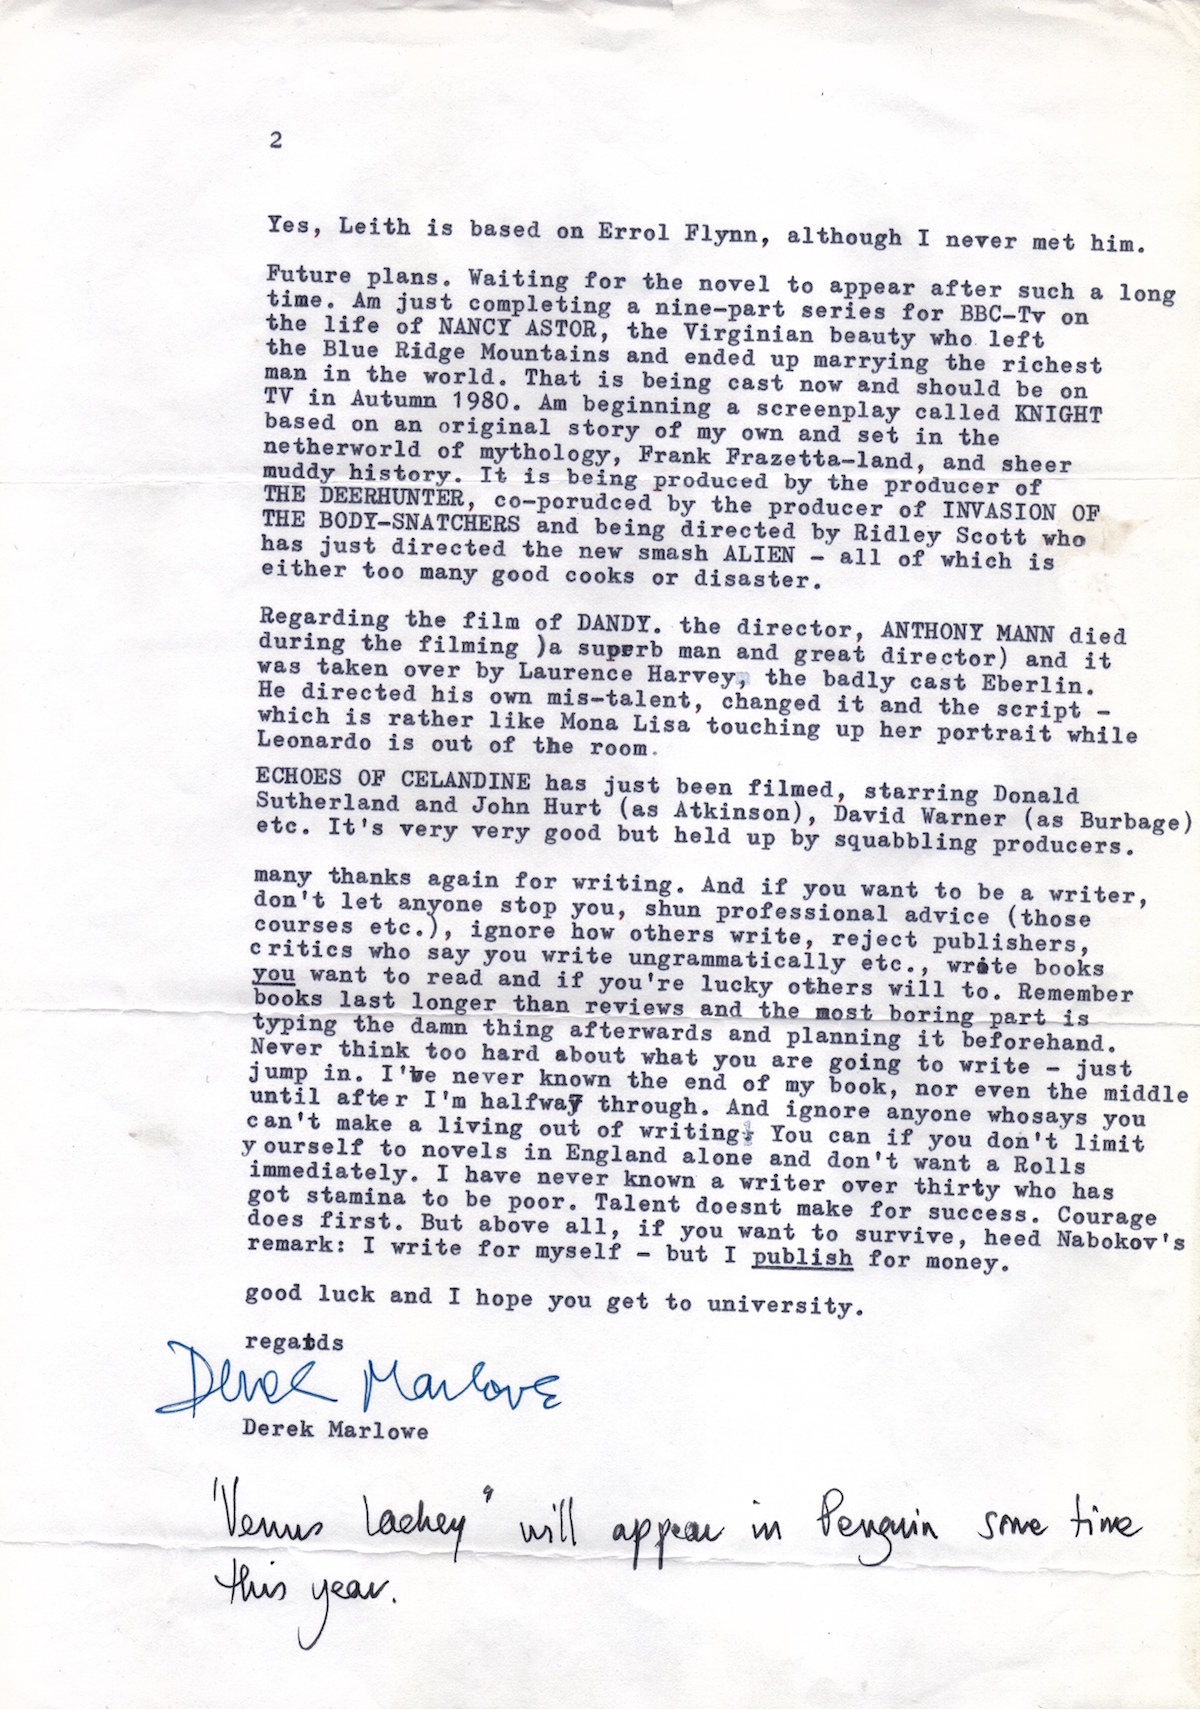 derek marlowe letter